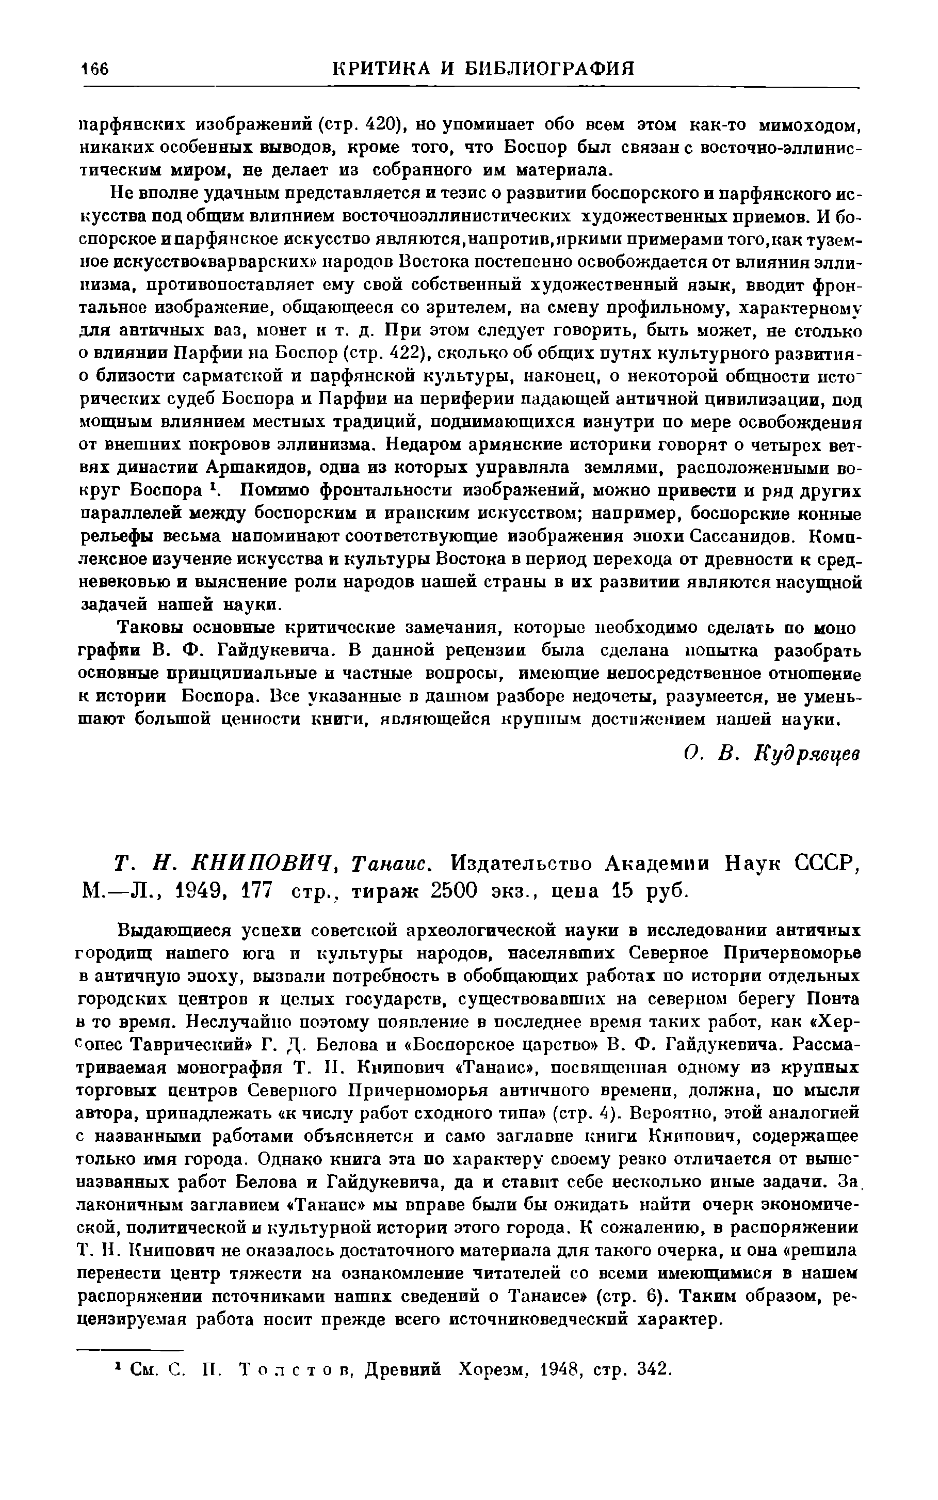 Шелов Д.Б. – Т.Н. Книпович. Танаис. М.–Л., 1949